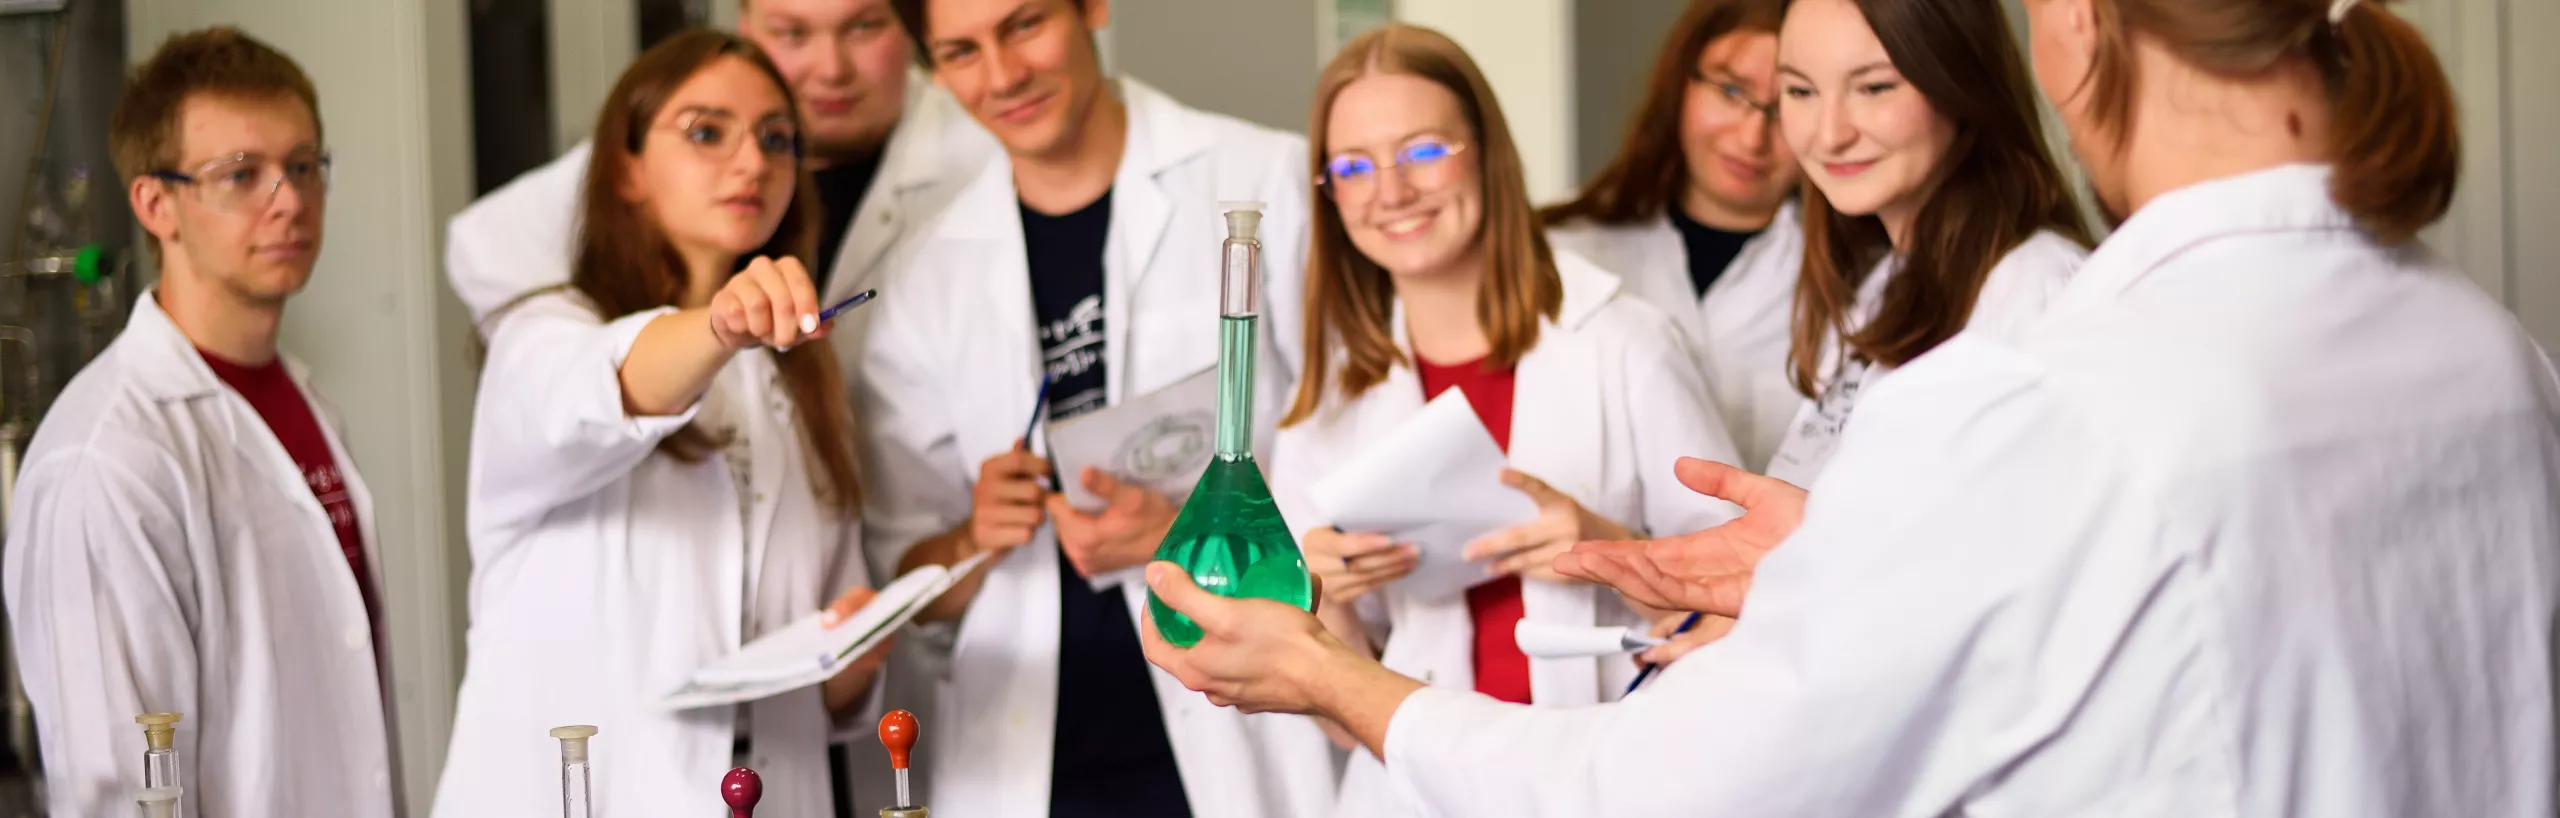 Studenci w laboratorium oglądają preparat chemiczny.